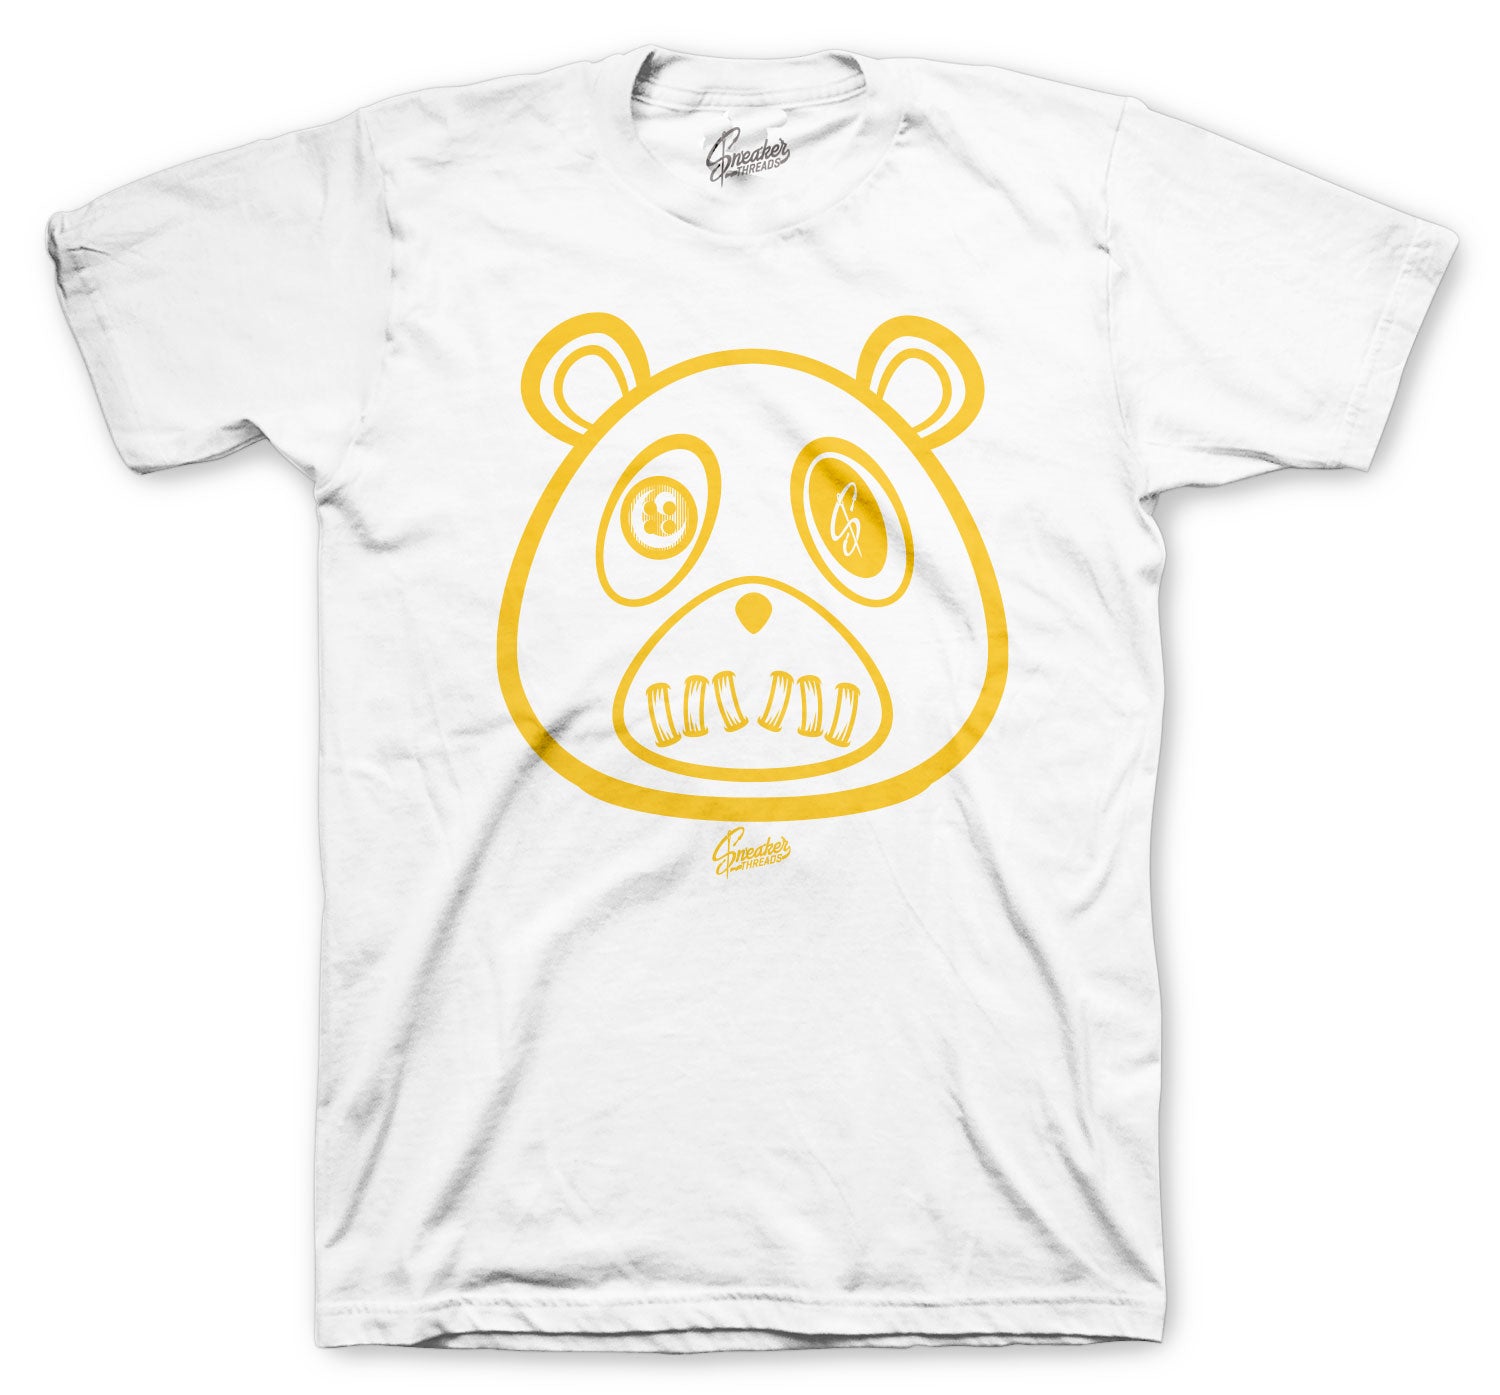 Retro 11 Citrus Shirt - ST Bear - White